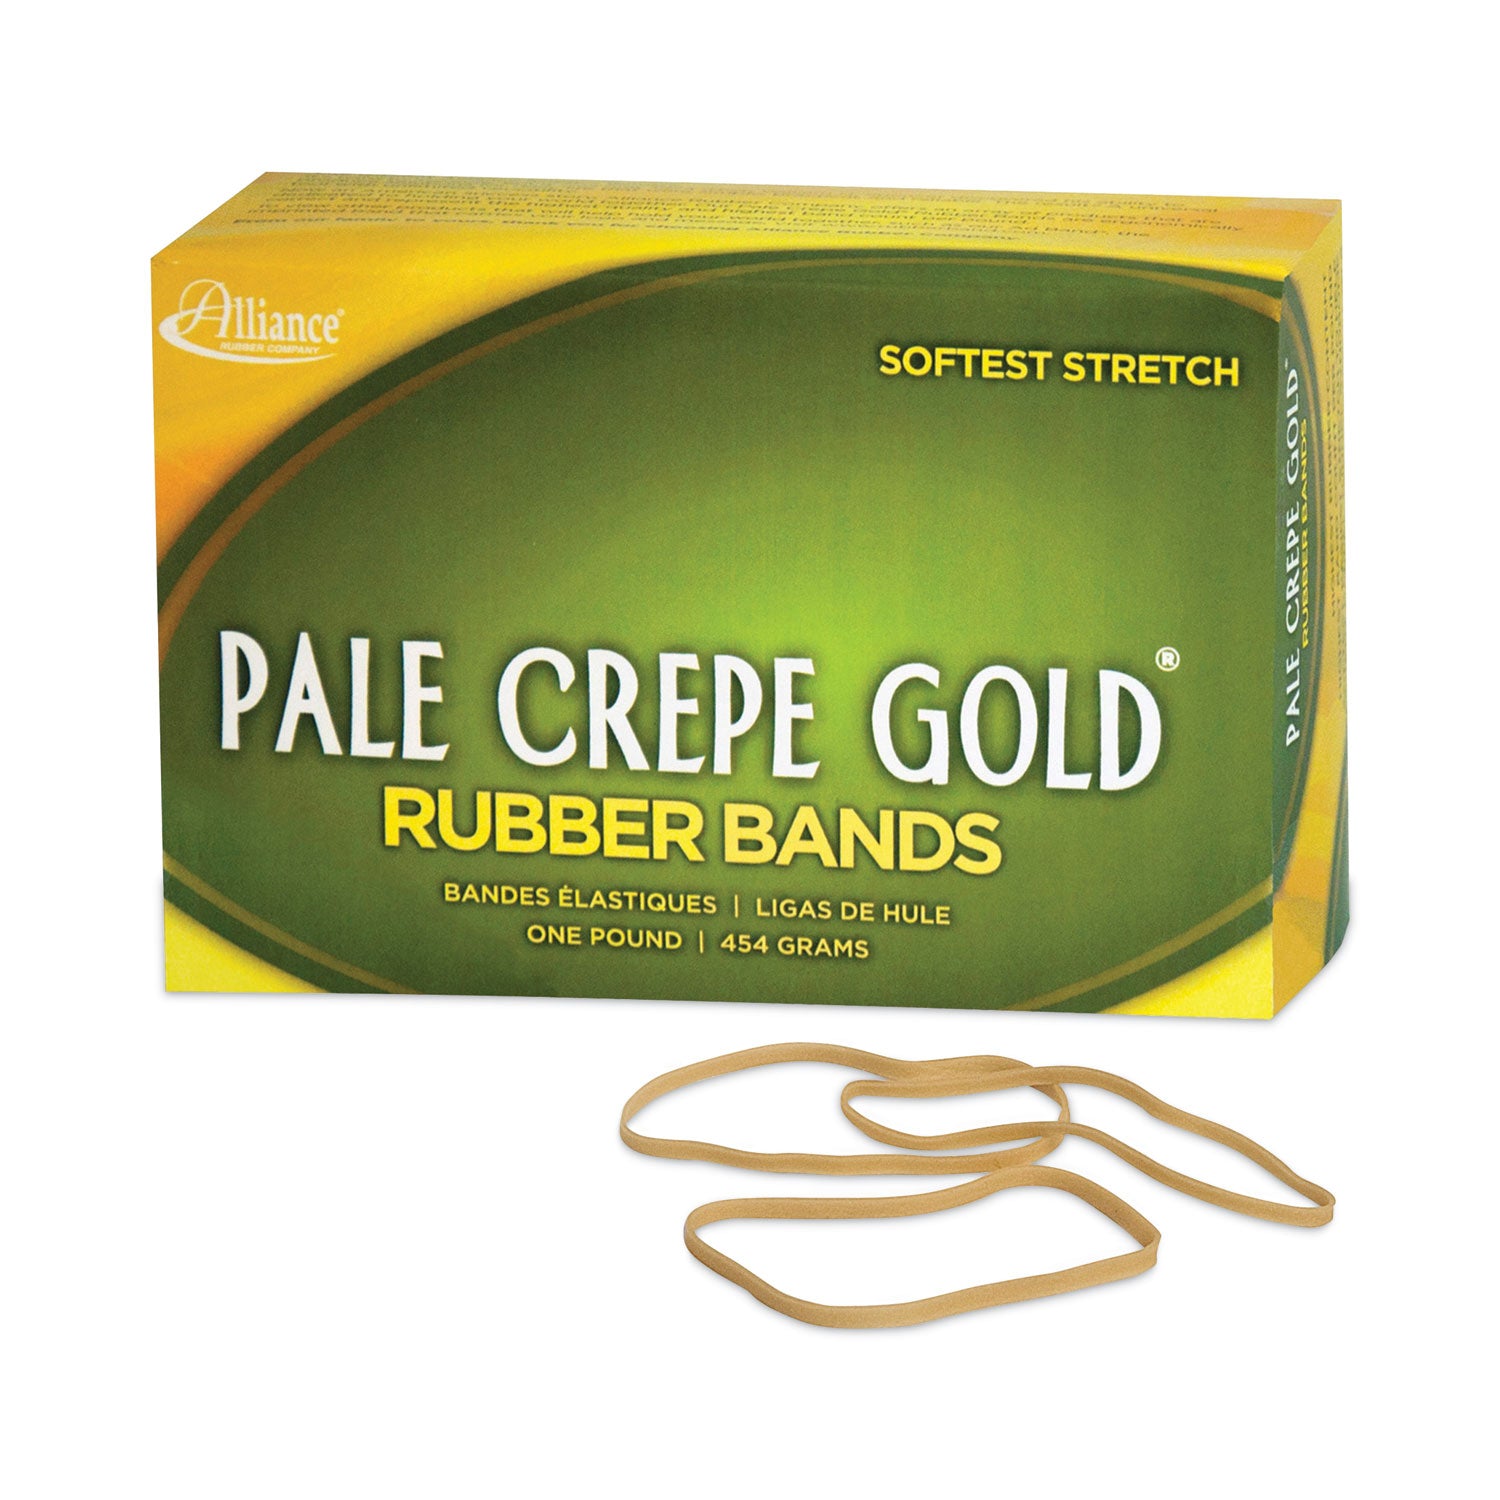 Pale Crepe Gold Rubber Bands, Size 33, 0.04" Gauge, Golden Crepe, 1 lb Box, 970/Box - 